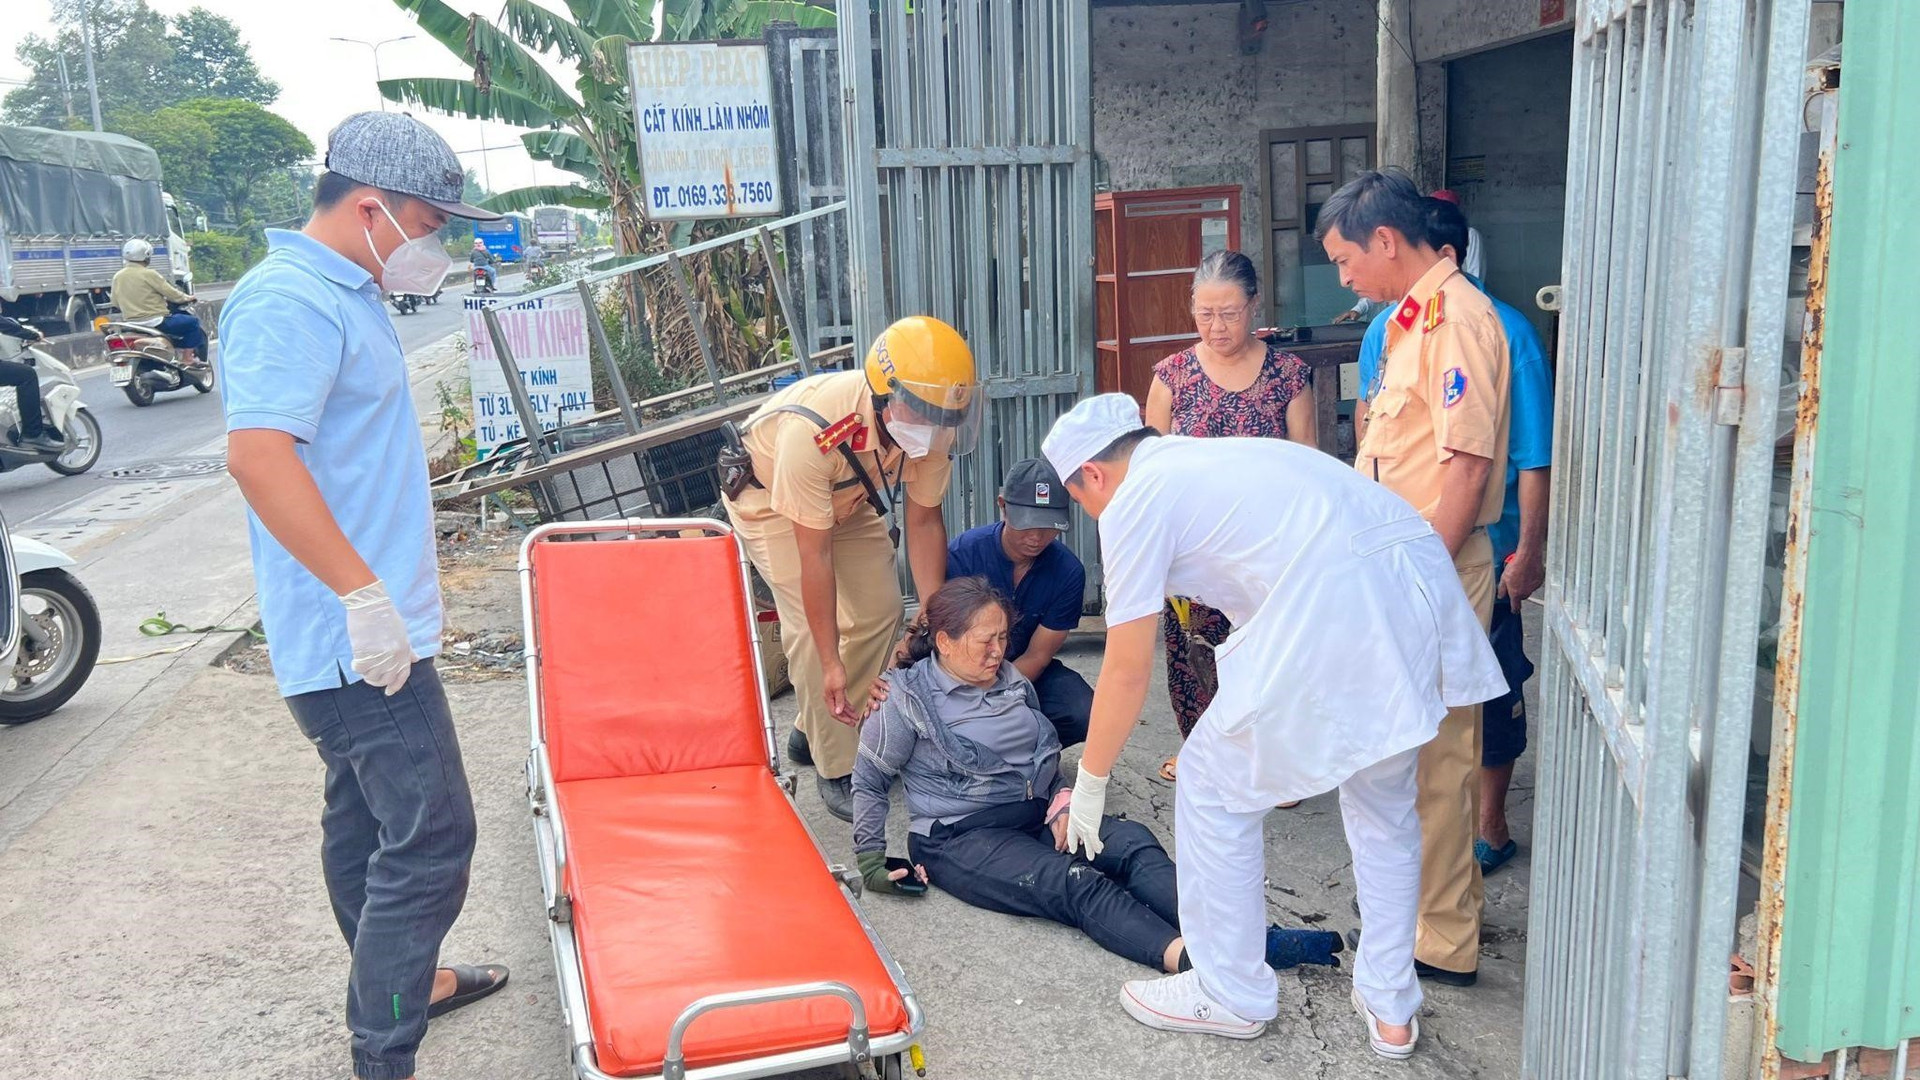 Đại uý Nguyễn Hoài Phong và trung tá Huỳnh Văn Hiếu, Phó trưởng trạm CSGT Tây Bắc hỗ trợ nạn nhân lên băng ca để vào bệnh viện cấp cứu.